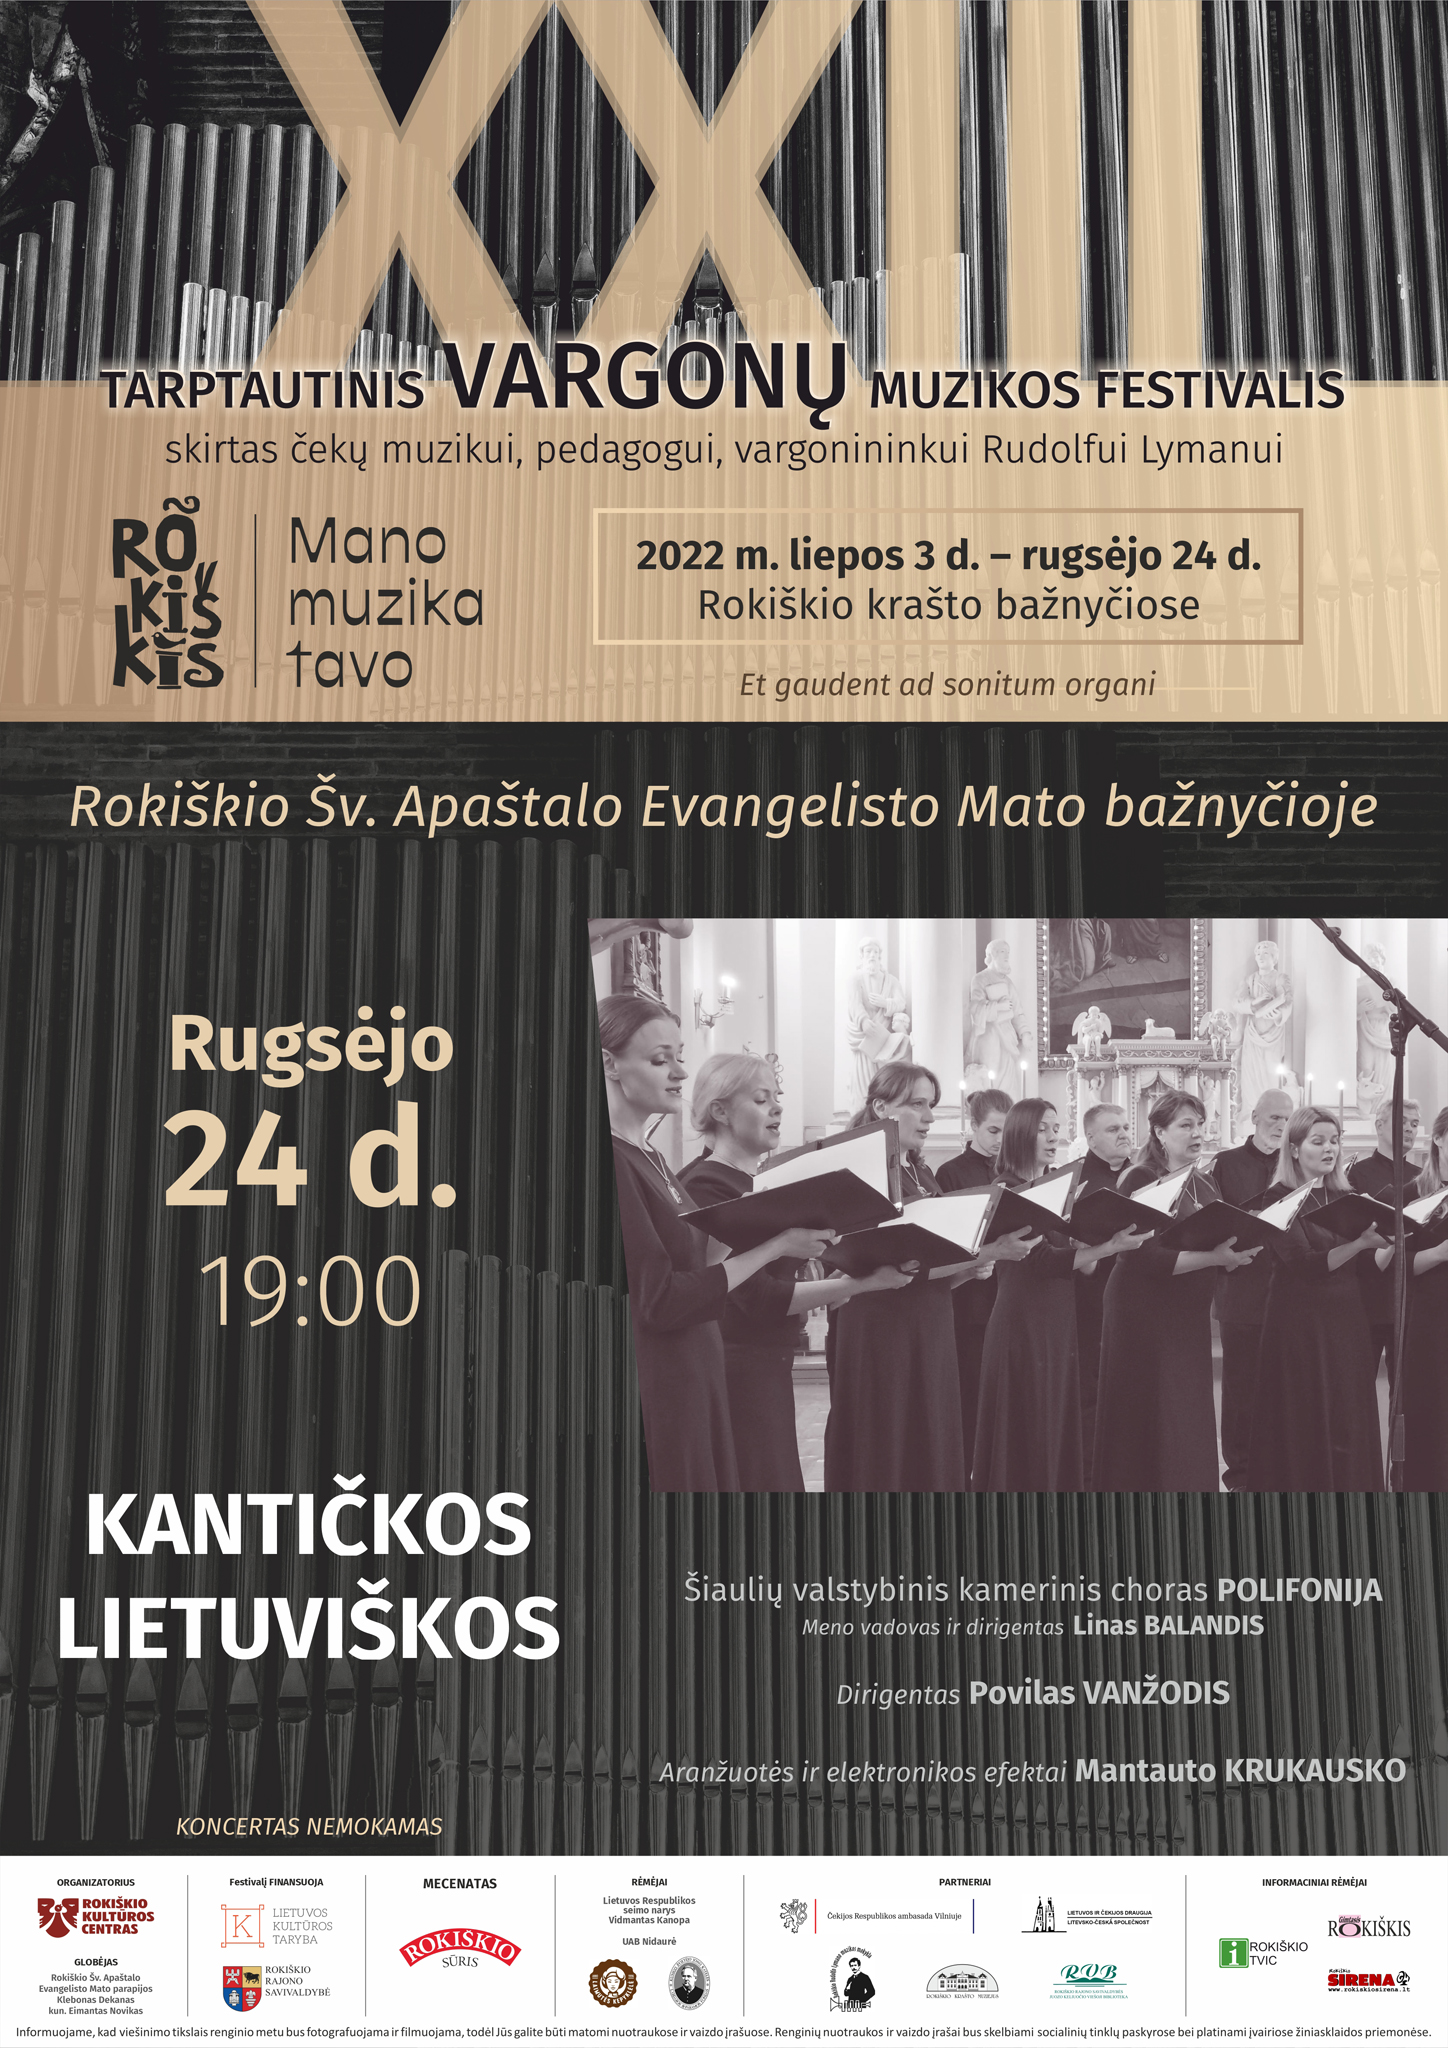 Tarptautinis vargonų muzikos festivalis Rokiškio Šv. Apaštalo Evangelisto Mato bažnyčioje